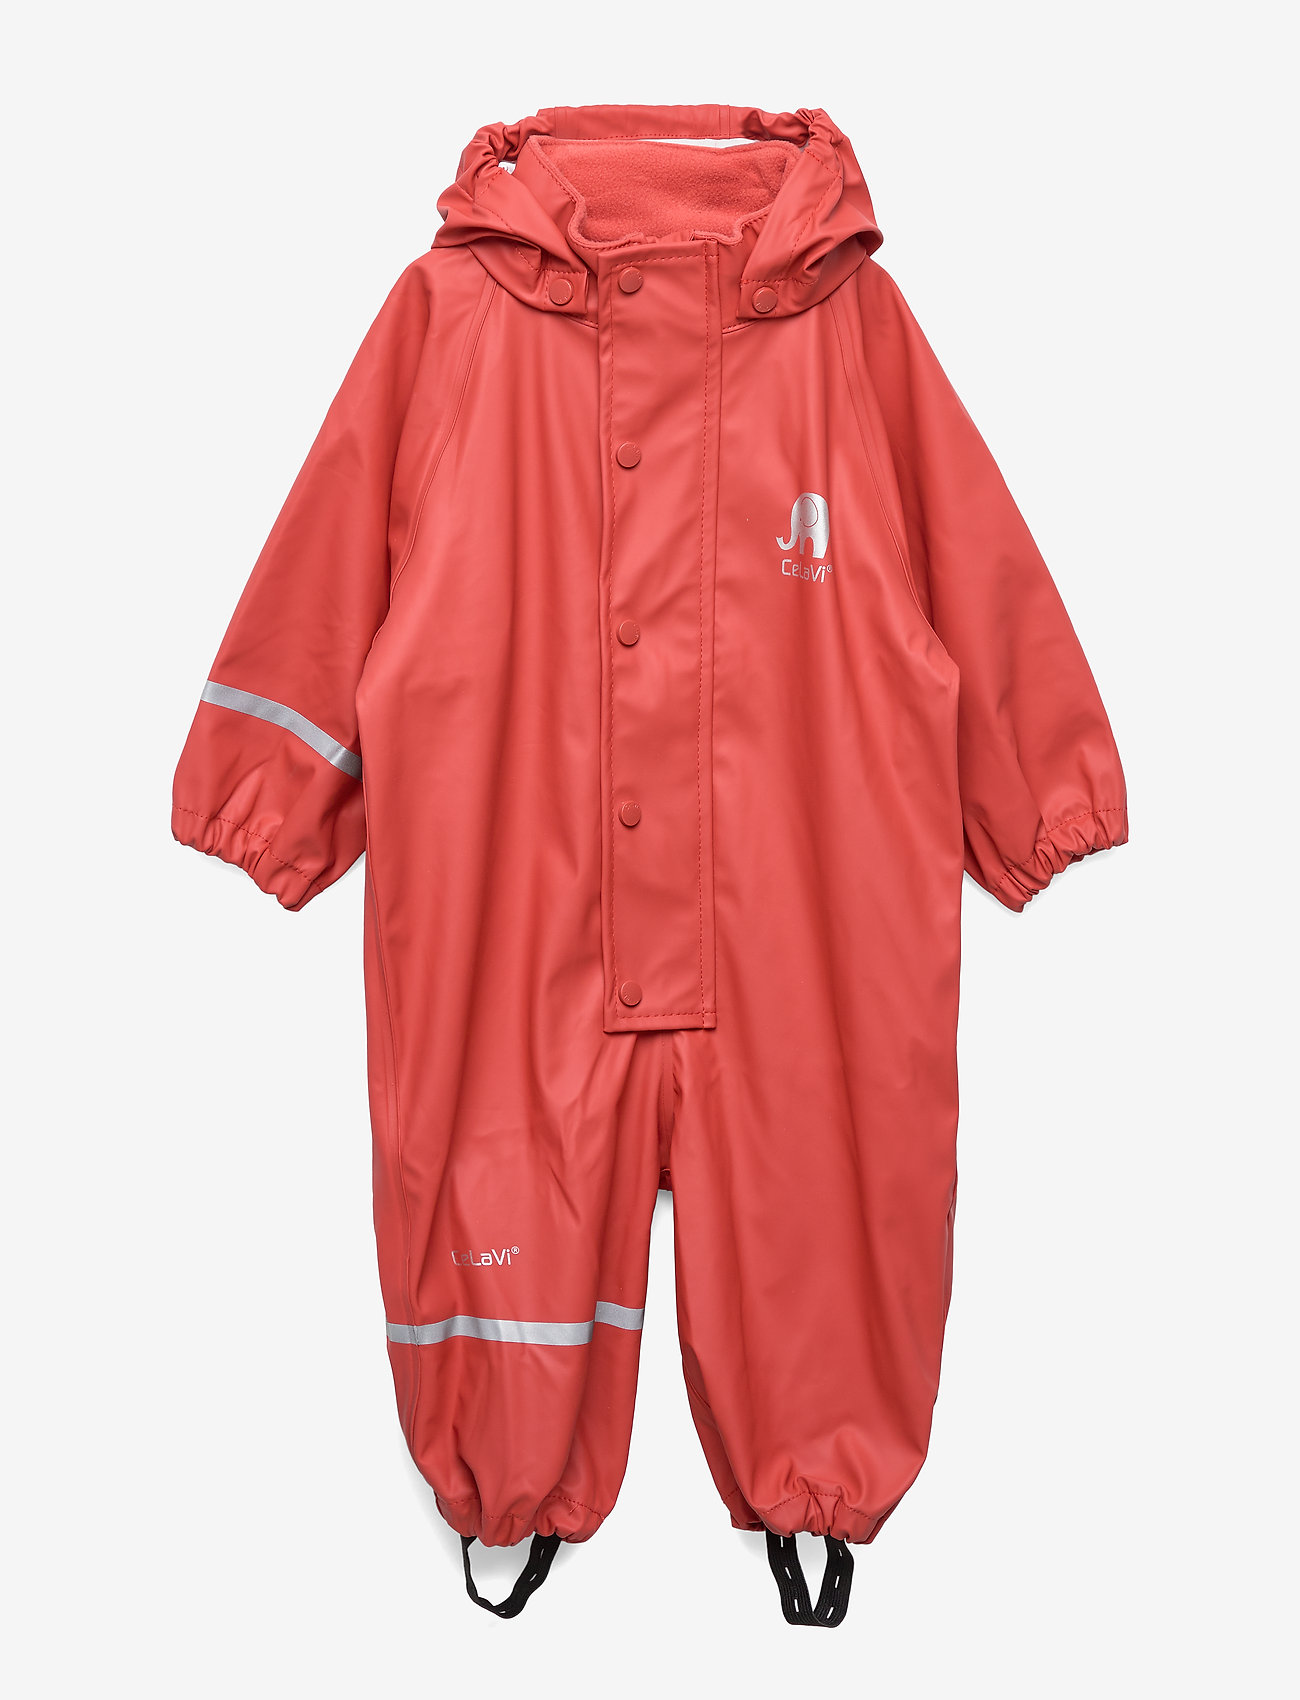 CeLaVi - Rainwear suit -Solid PU - lietus valkā kombinezoni - baked apple - 0